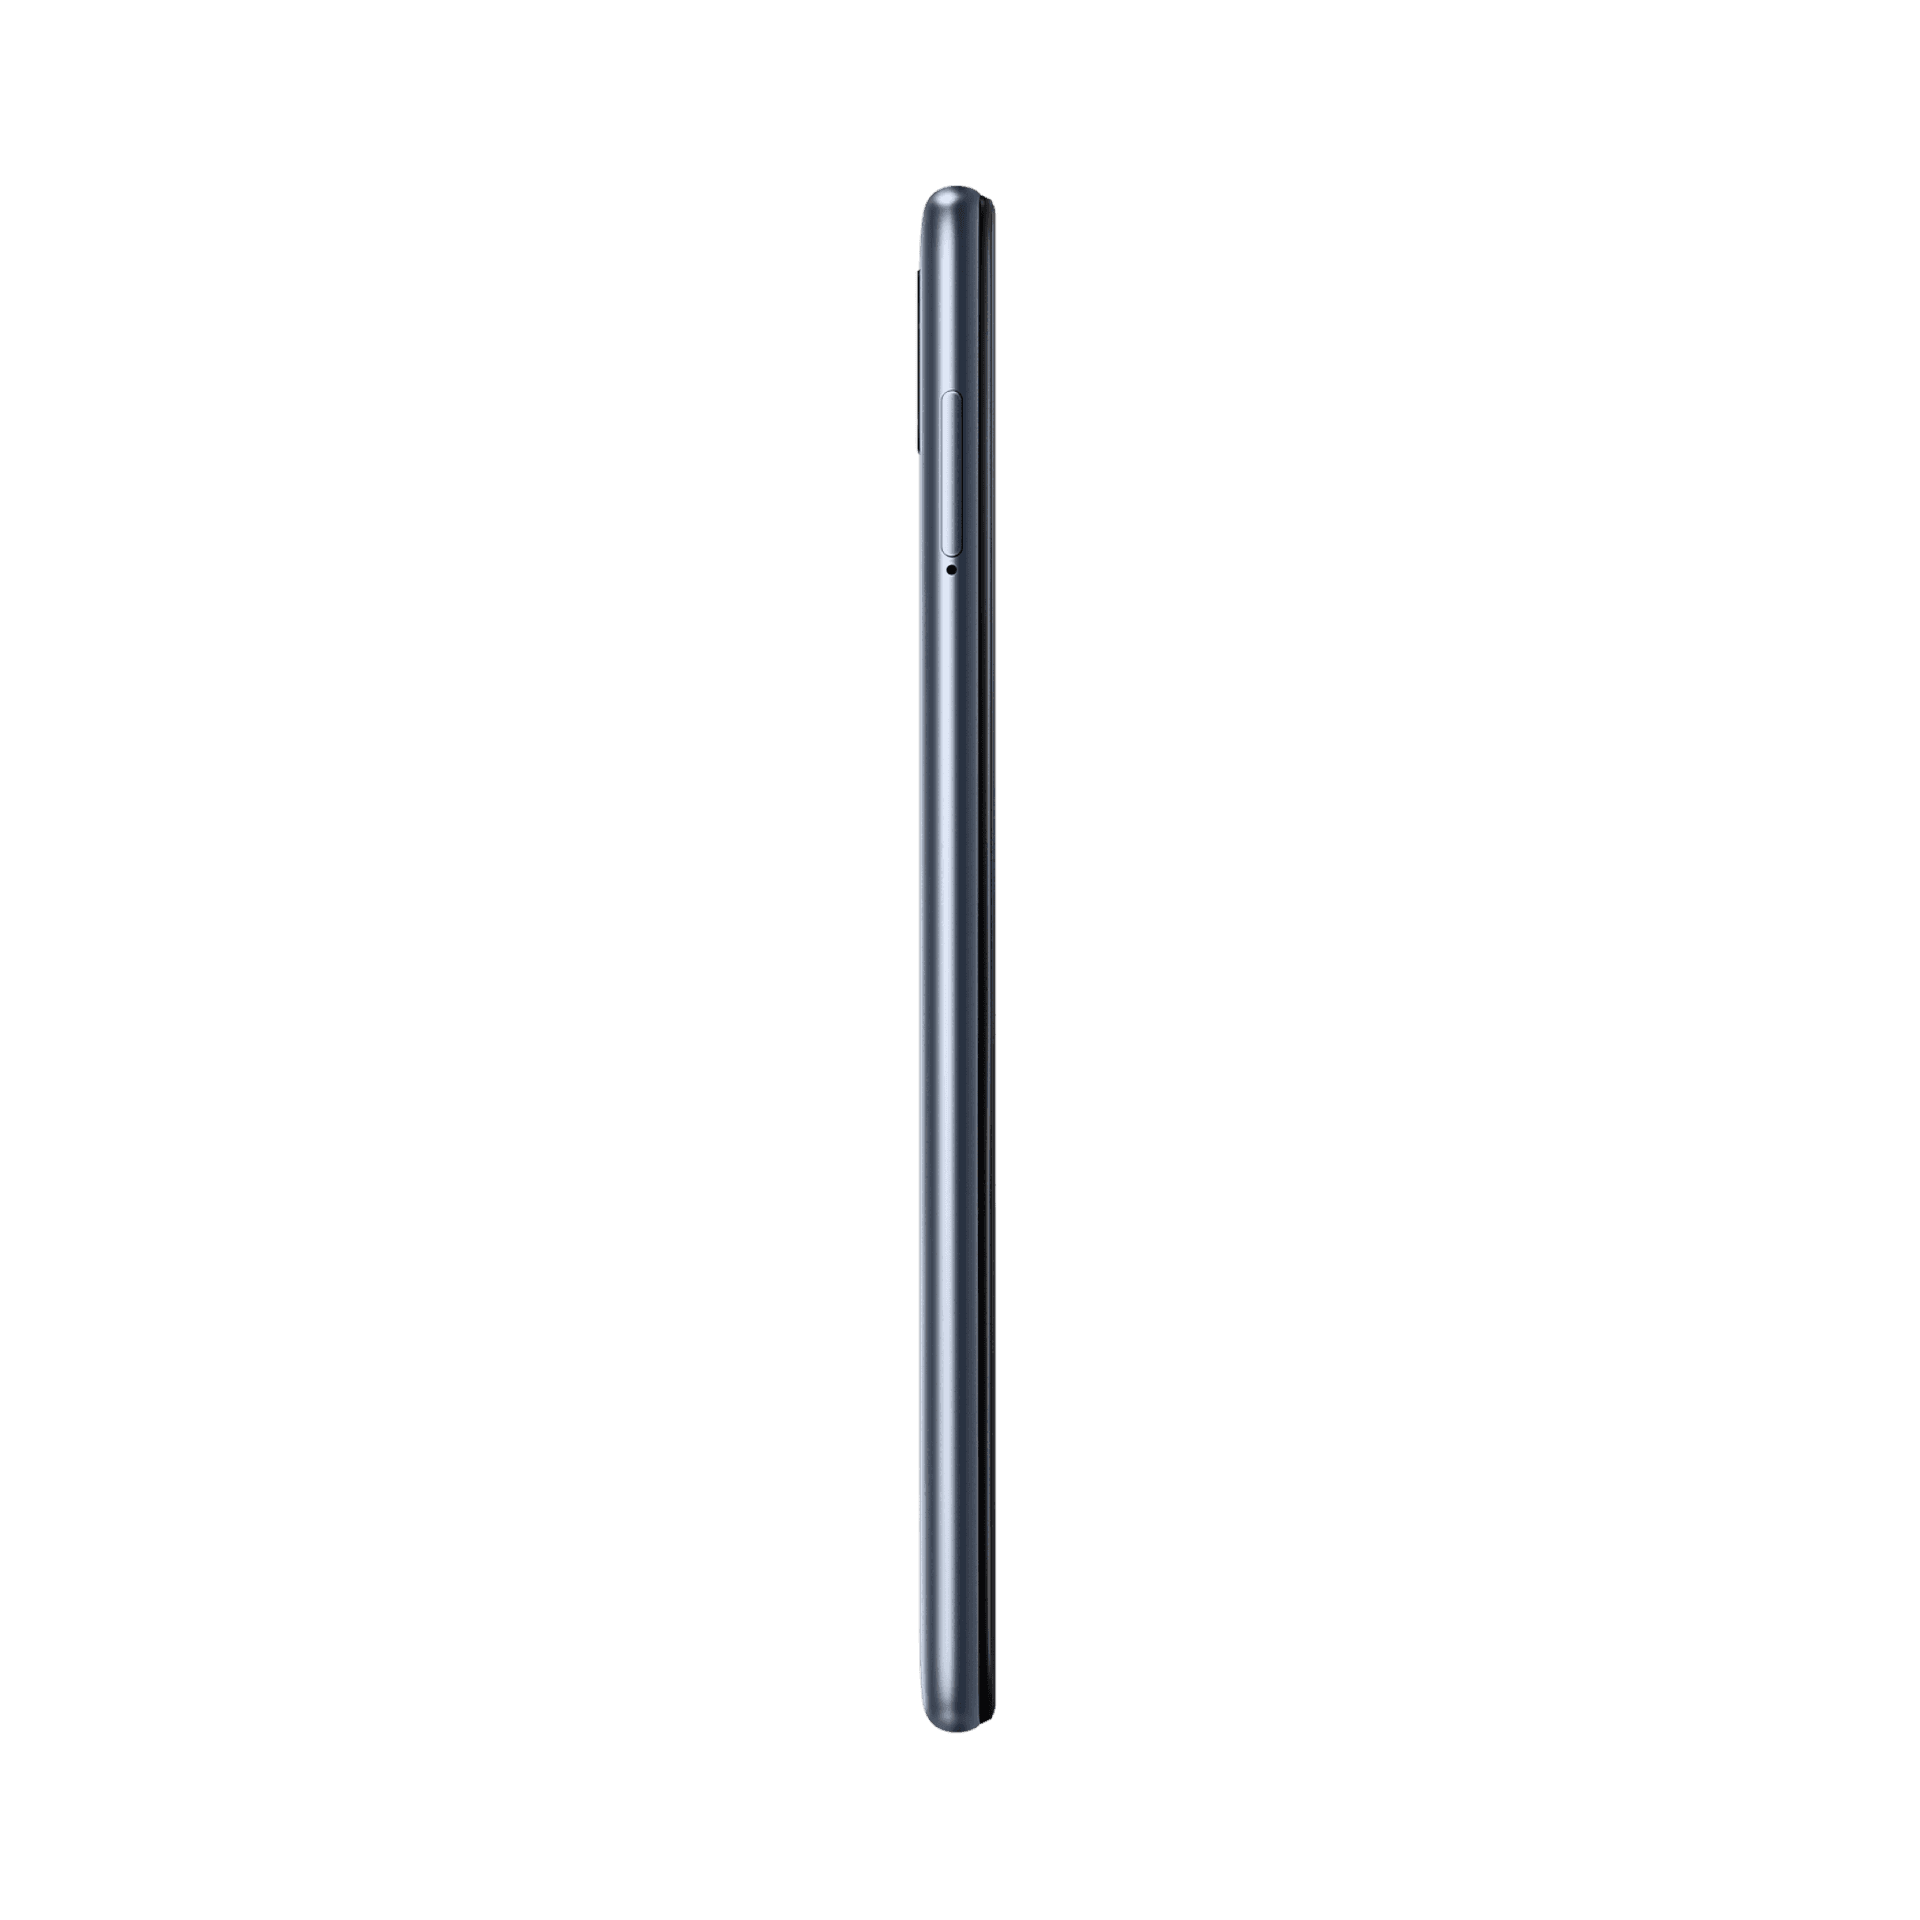 Samsung Galaxy M20 - 32 GB - Kömür Siyahı